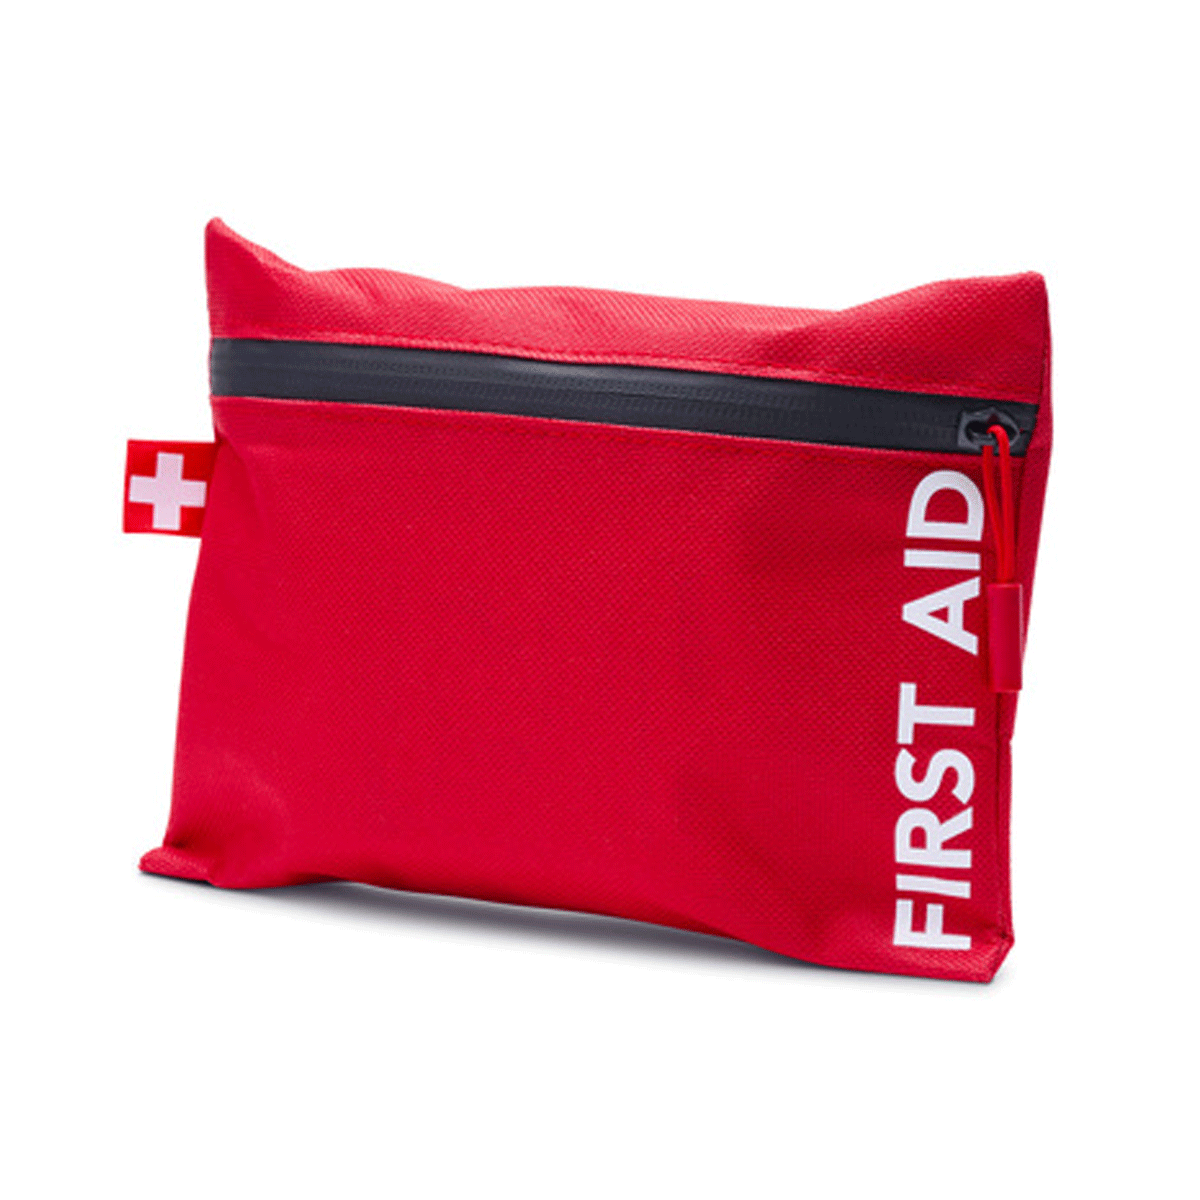 First Aid Kit Urgent